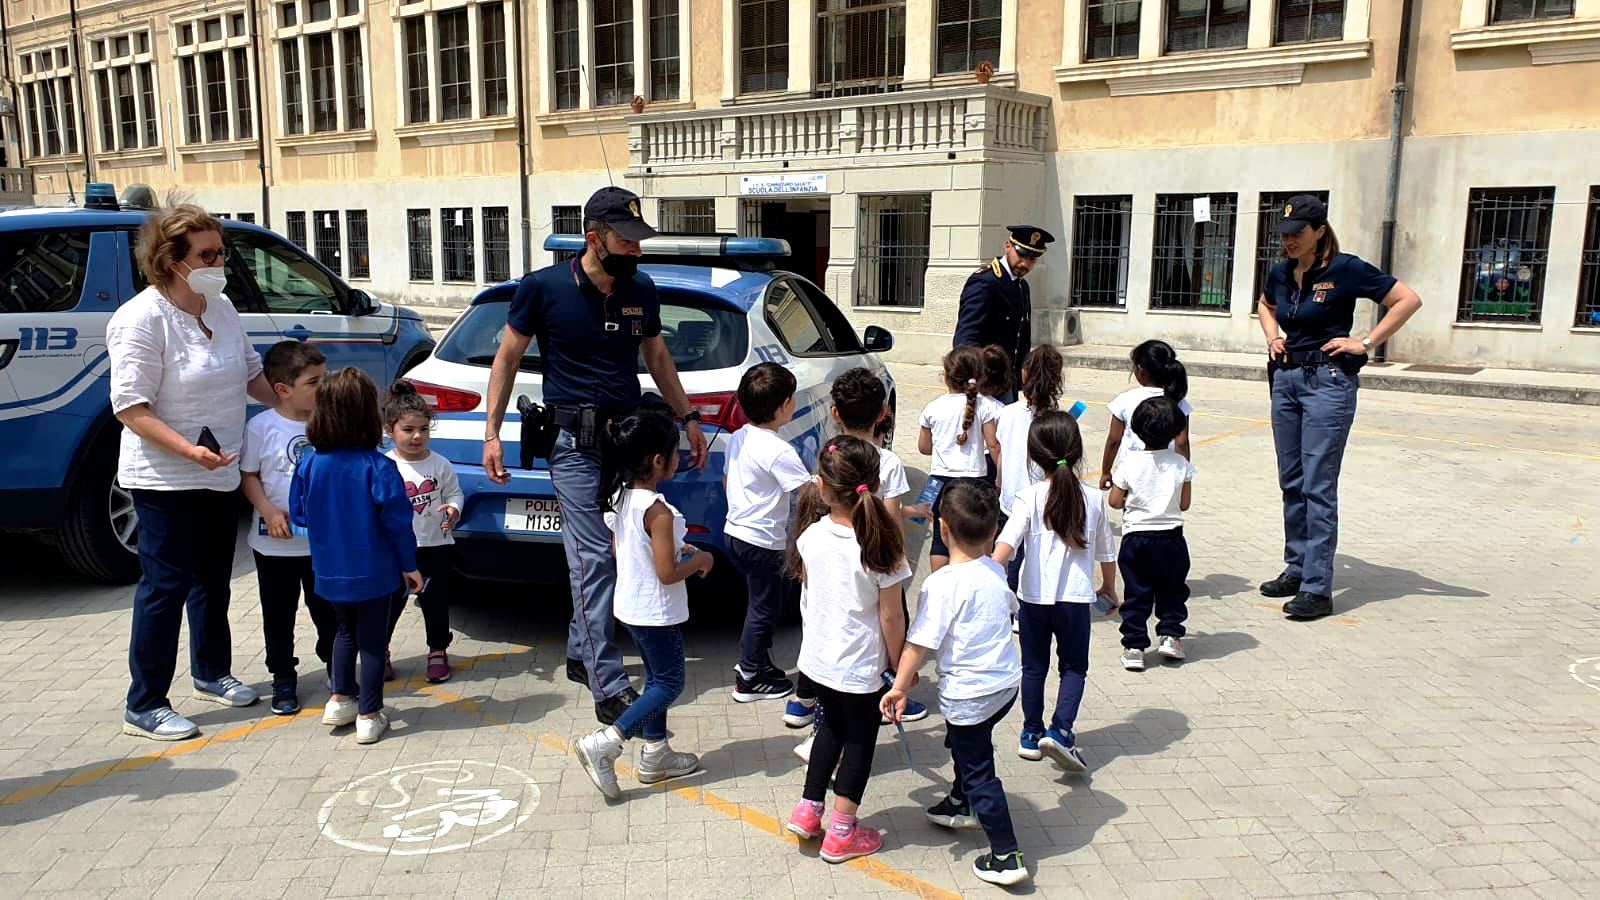 Campagna di informazione e sensibilizzazione della Polizia di Stato rivolta ai bambini e agli adolescenti. La Questura di Messina, in piazza e a scuola, vicini alla gente.